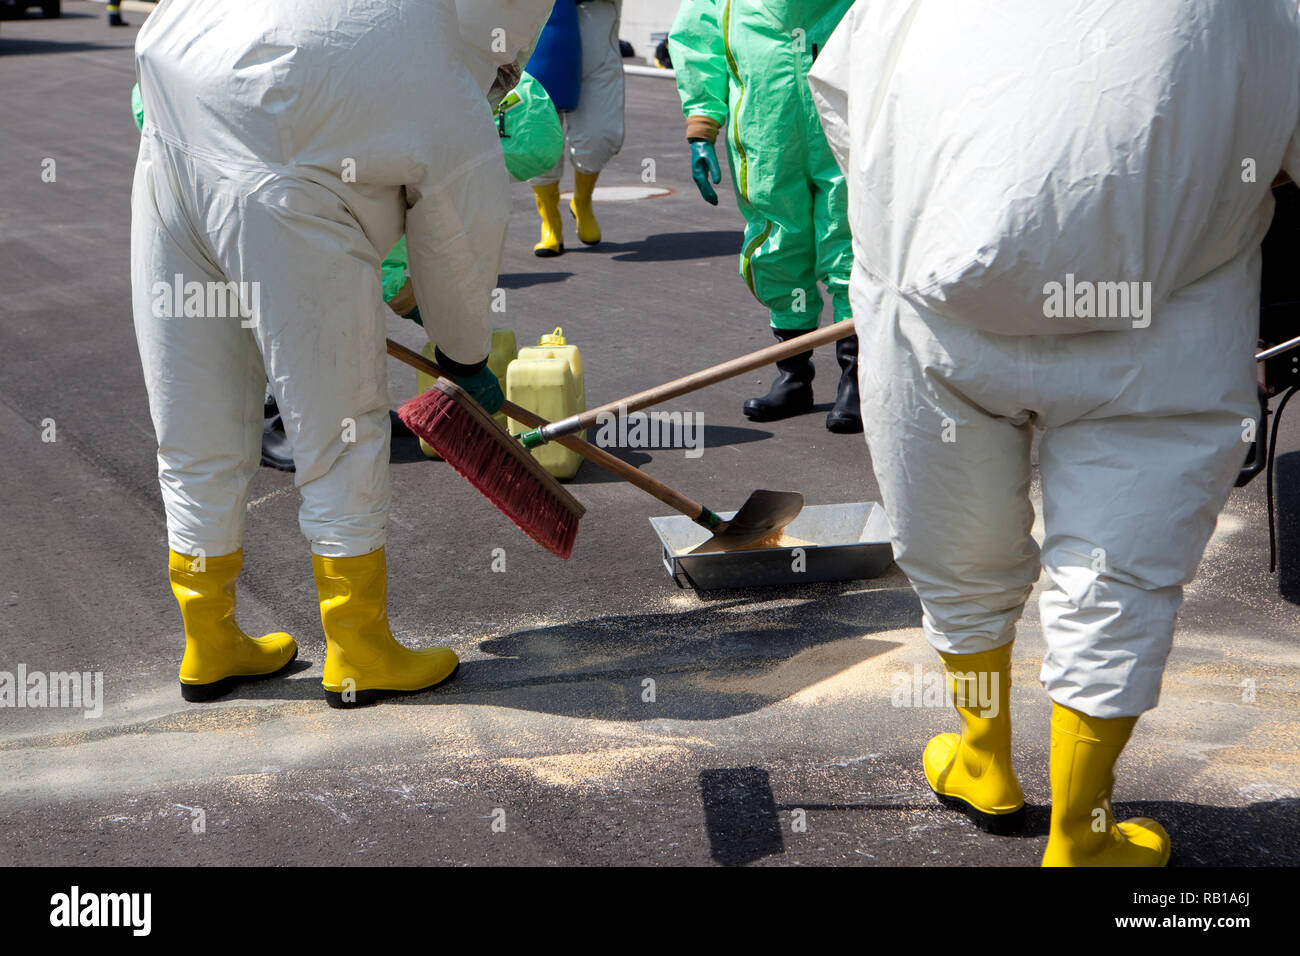 Los hombres en ropa protectora la limpieza después de accidentes químicos. El engranaje inflable protege también contra la contaminación con partículas radioactivas, contra Foto de stock